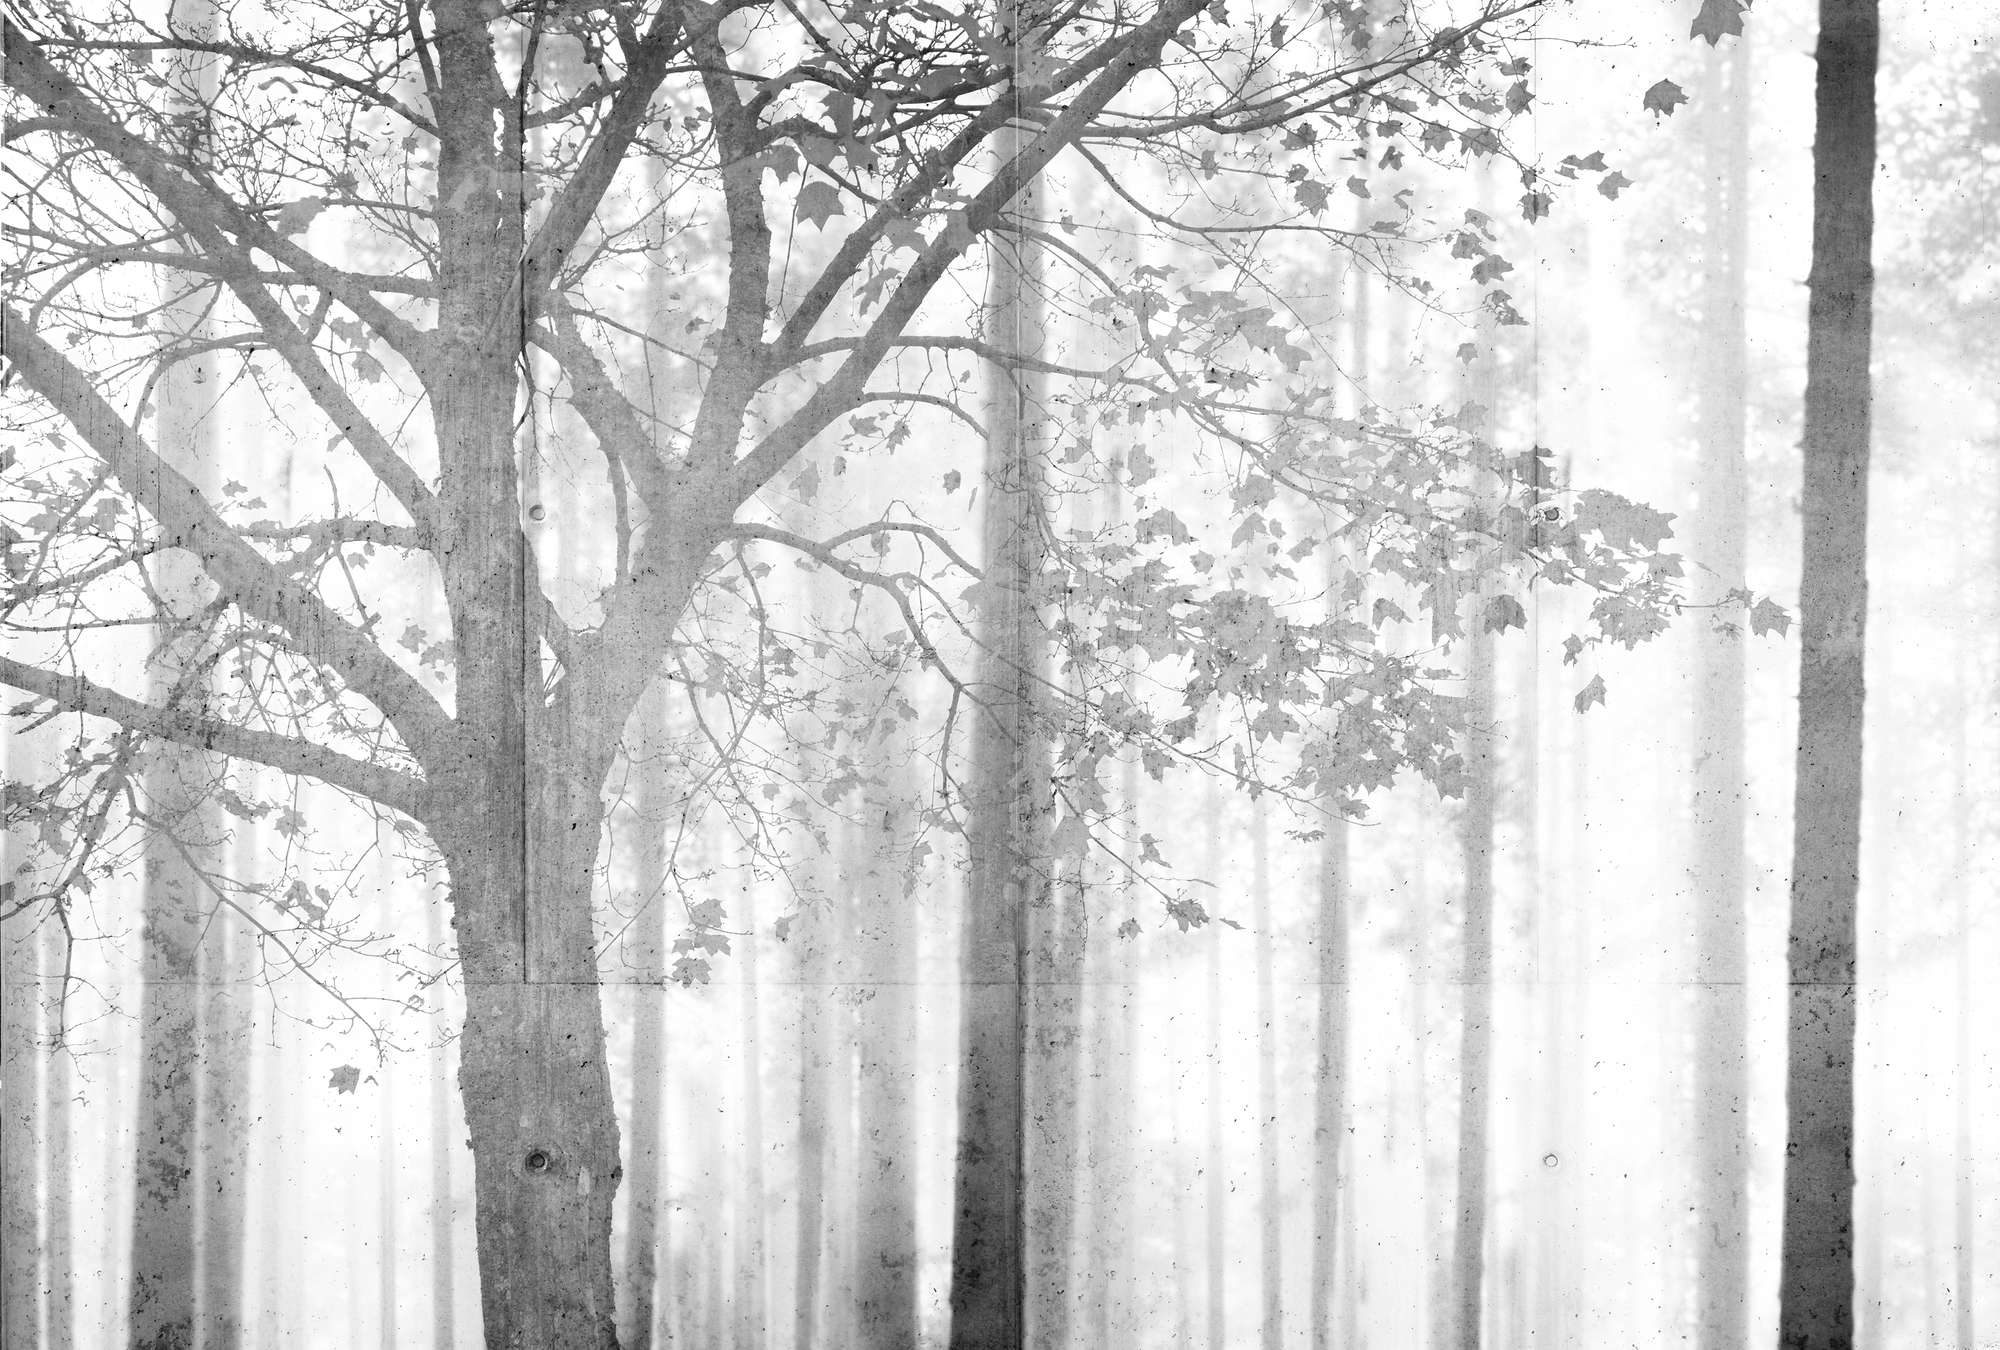             Fototapete Wald in Schwarz-Weiß mit Grauschattierung – Grau, Weiß, Schwarz
        